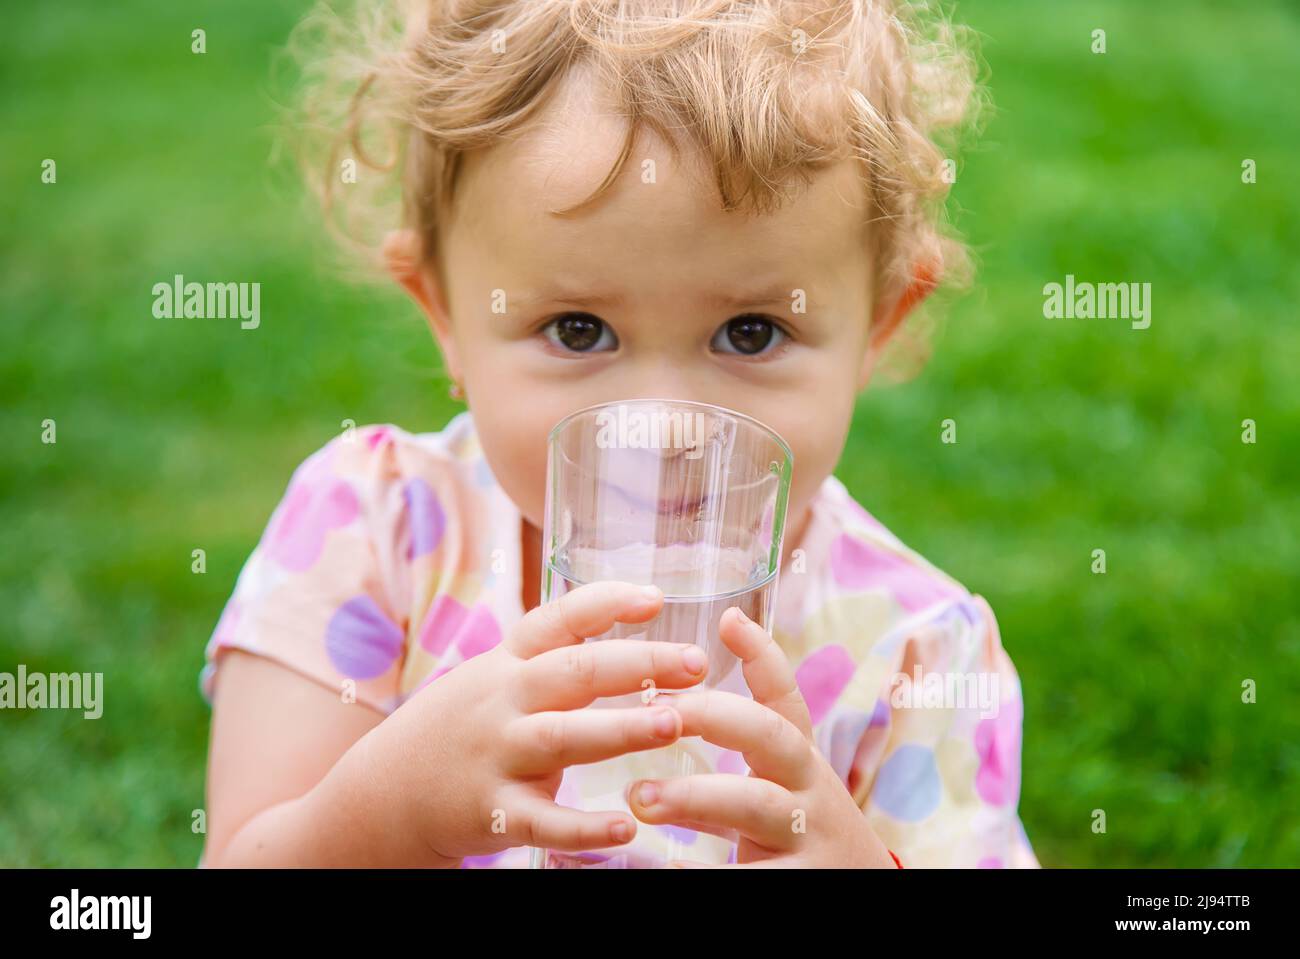 Bébé boit de l'eau dans un verre. Mise au point sélective Photo Stock -  Alamy